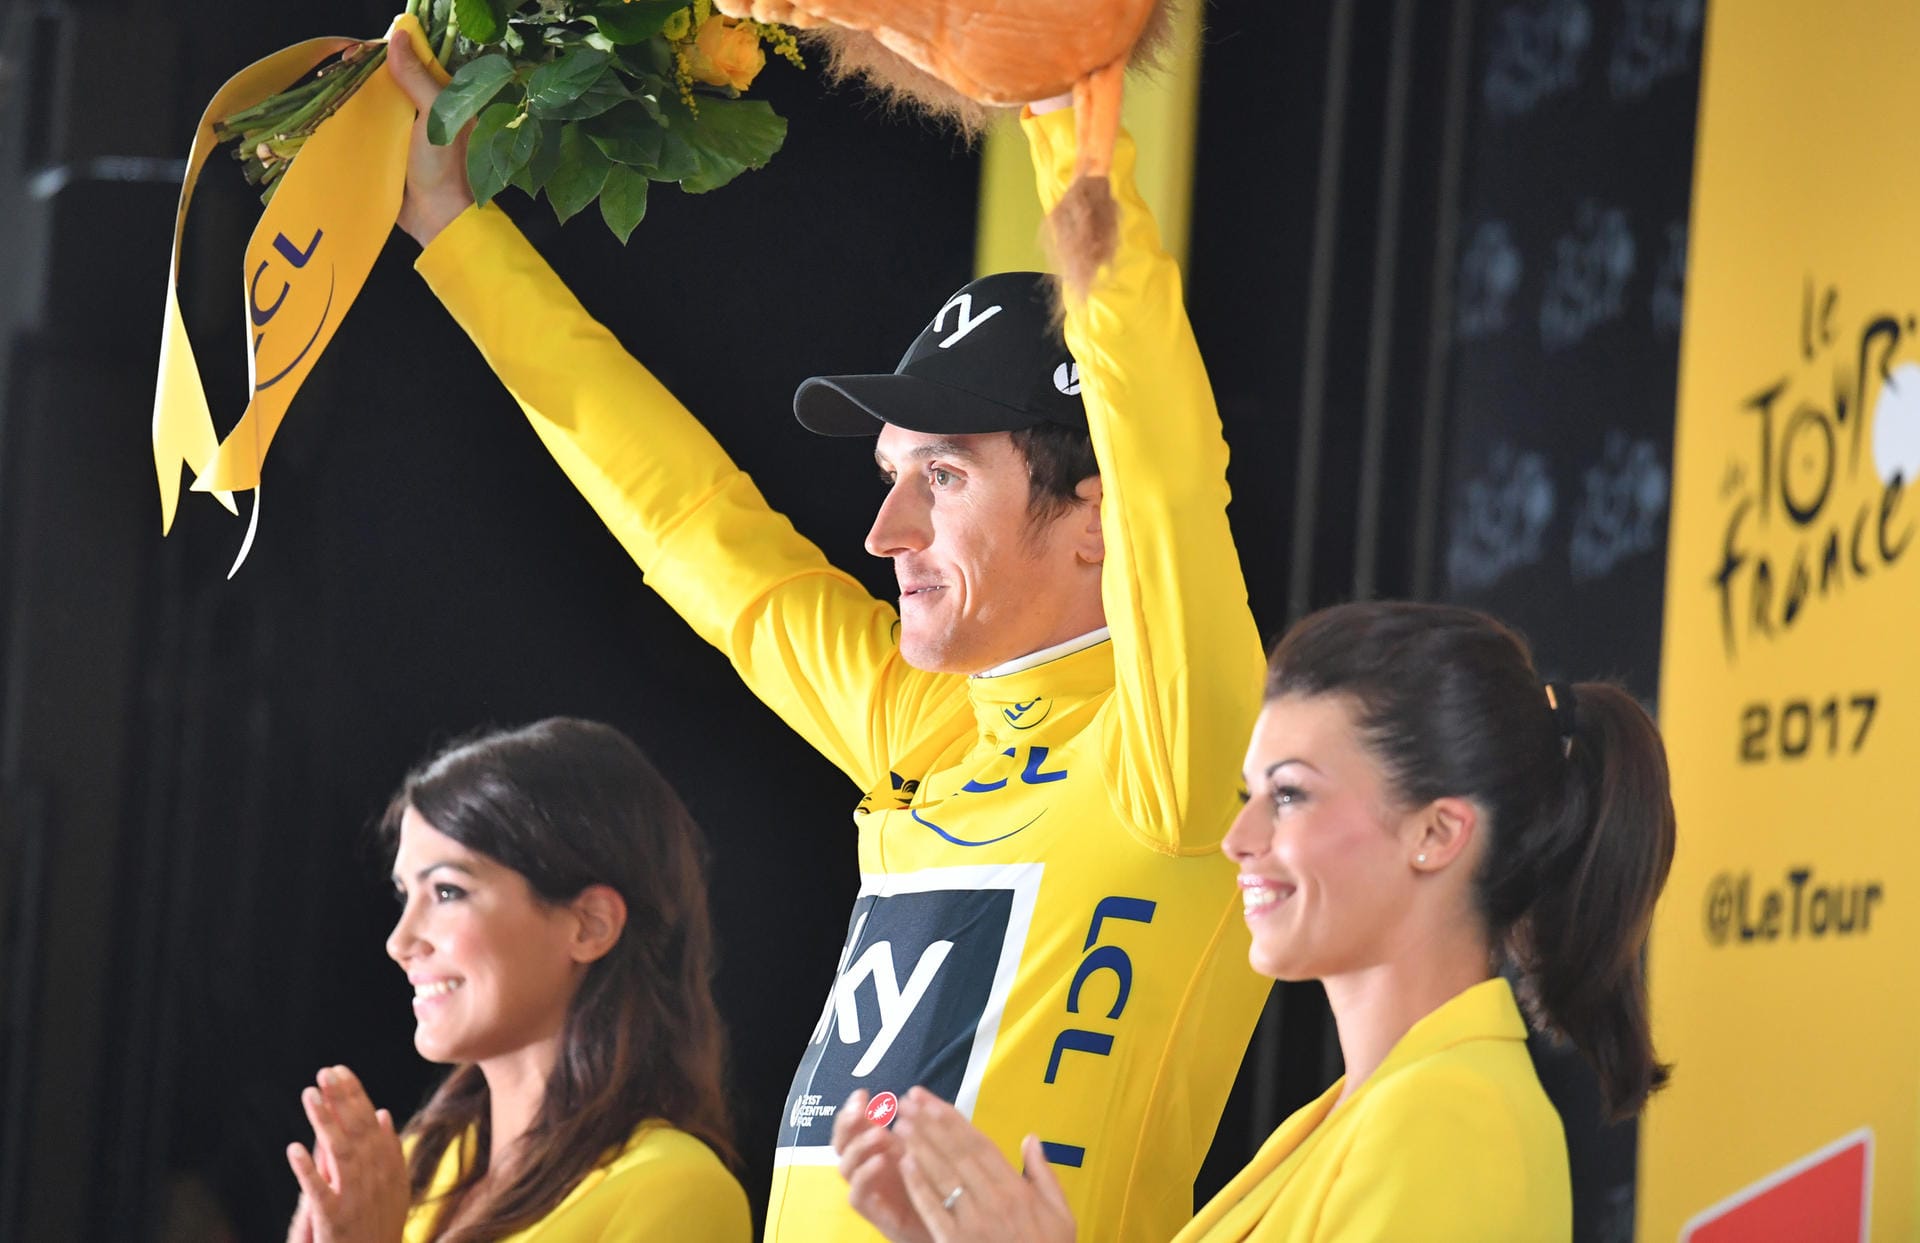 Geraint Thomas feier seinen Sieg bei der Tour de France.